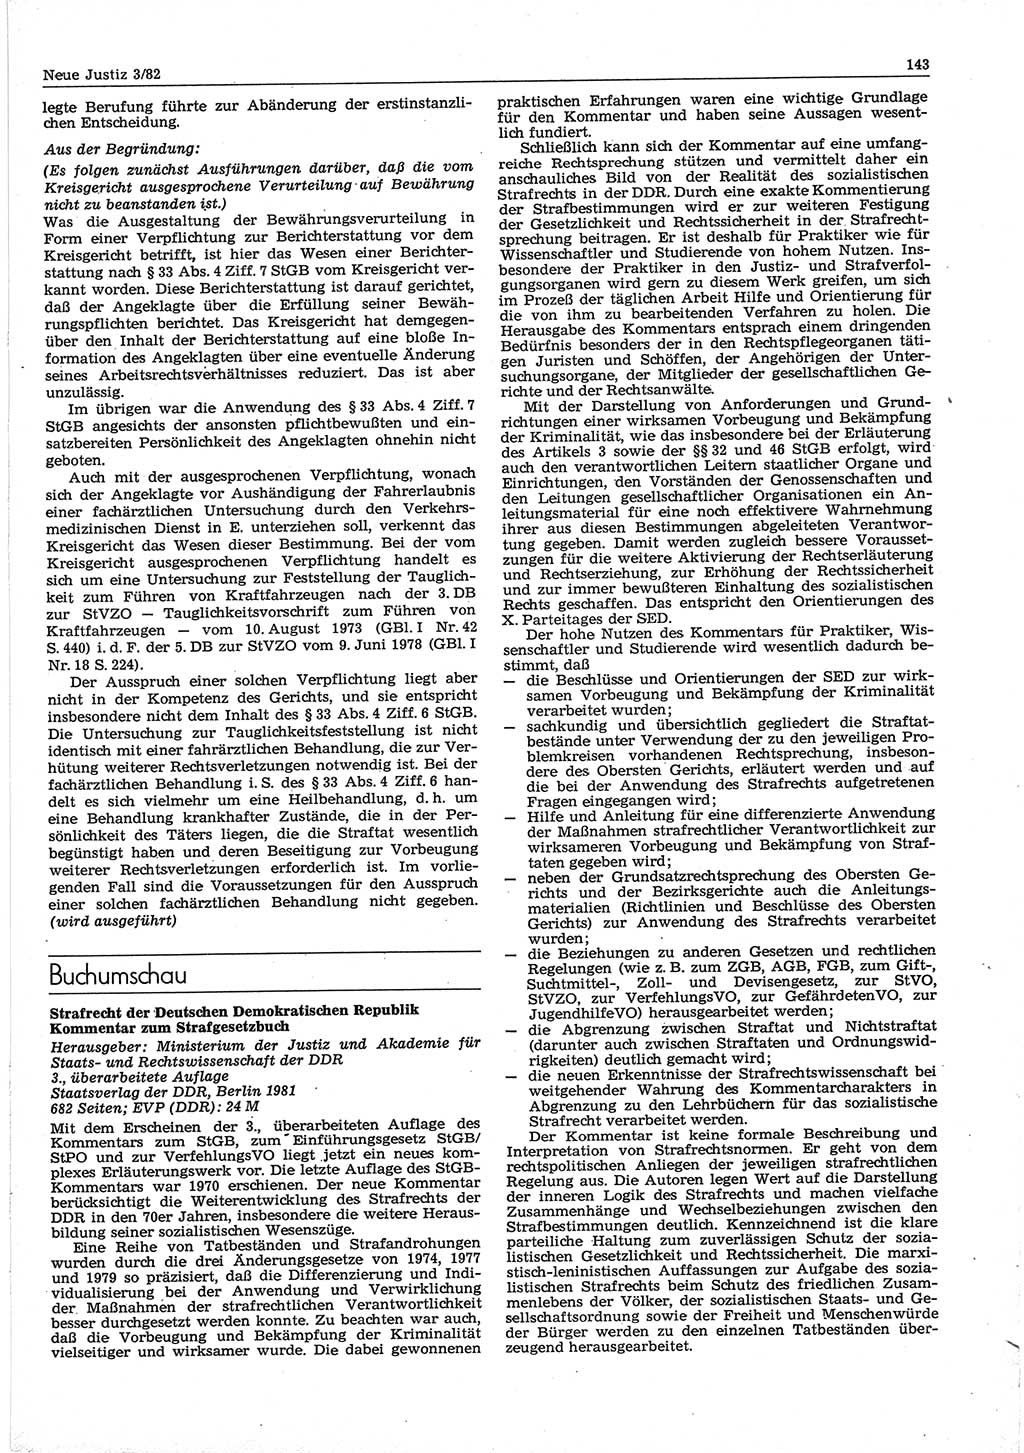 Neue Justiz (NJ), Zeitschrift für sozialistisches Recht und Gesetzlichkeit [Deutsche Demokratische Republik (DDR)], 36. Jahrgang 1982, Seite 143 (NJ DDR 1982, S. 143)